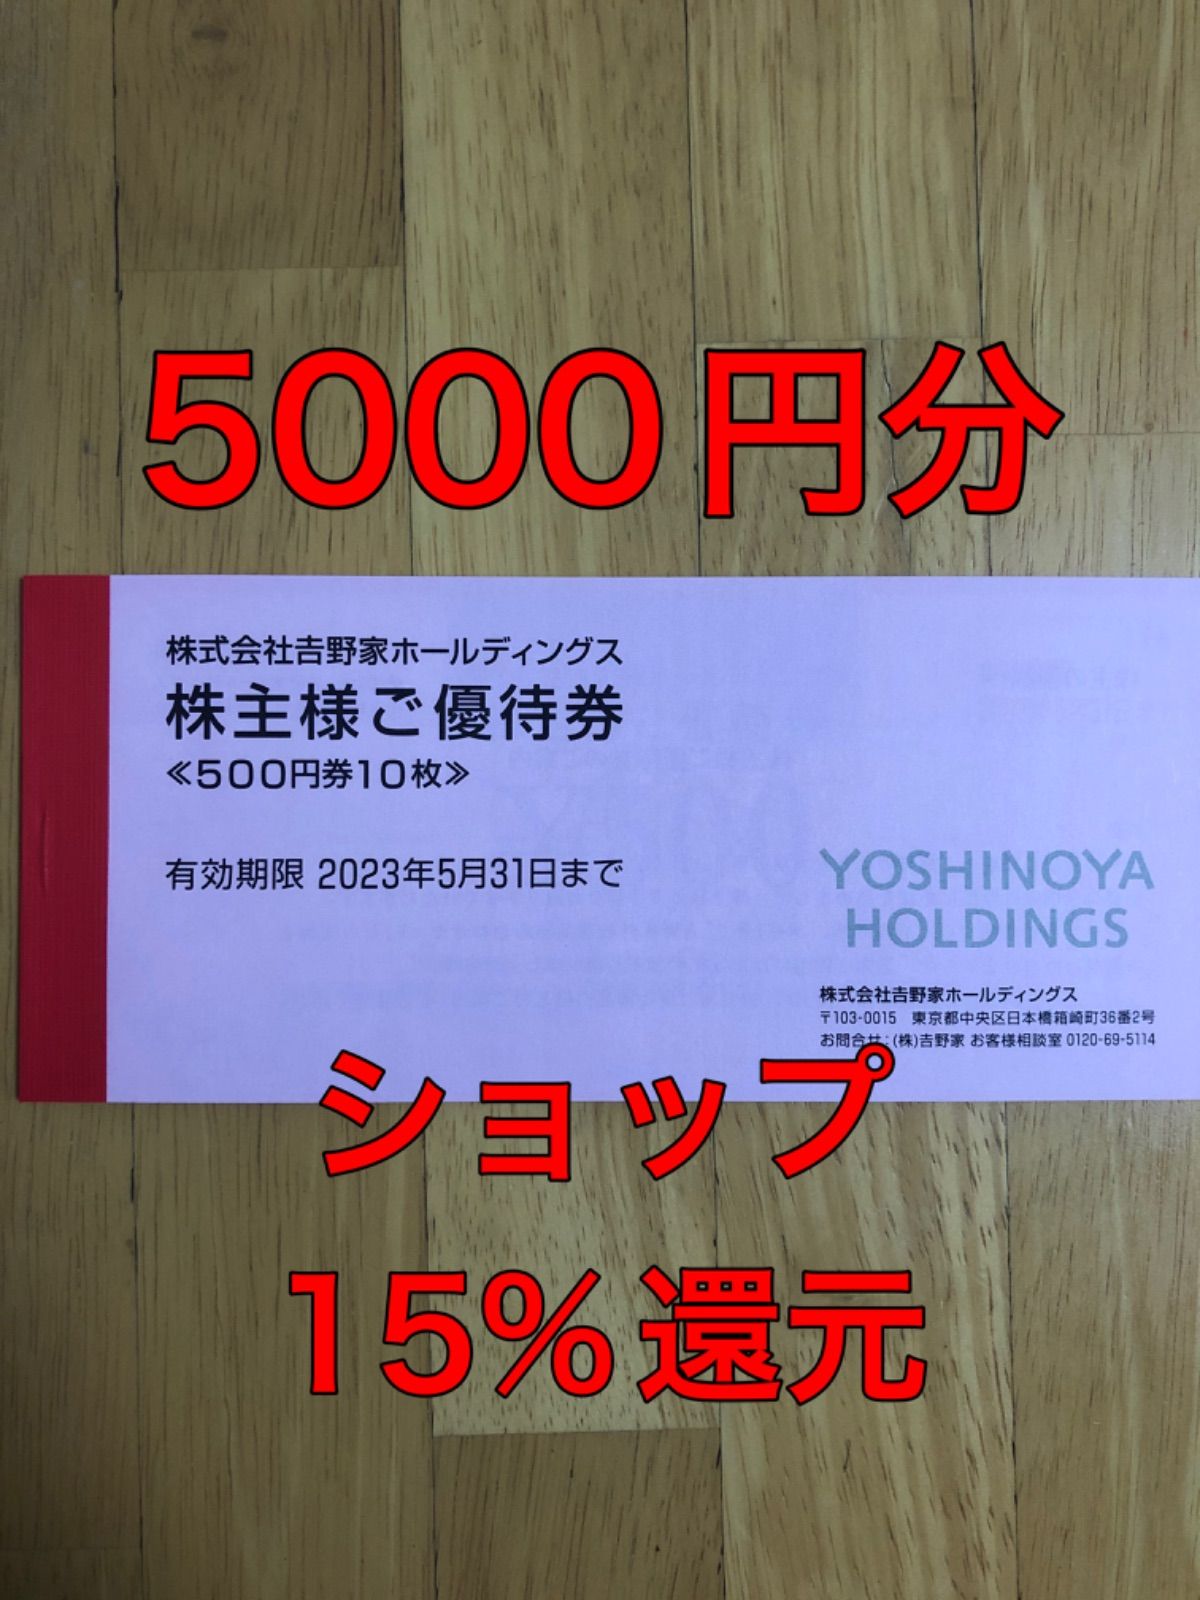 吉野家 株主優待 5000円分 (500円券×10枚)有効期限2023年5月31